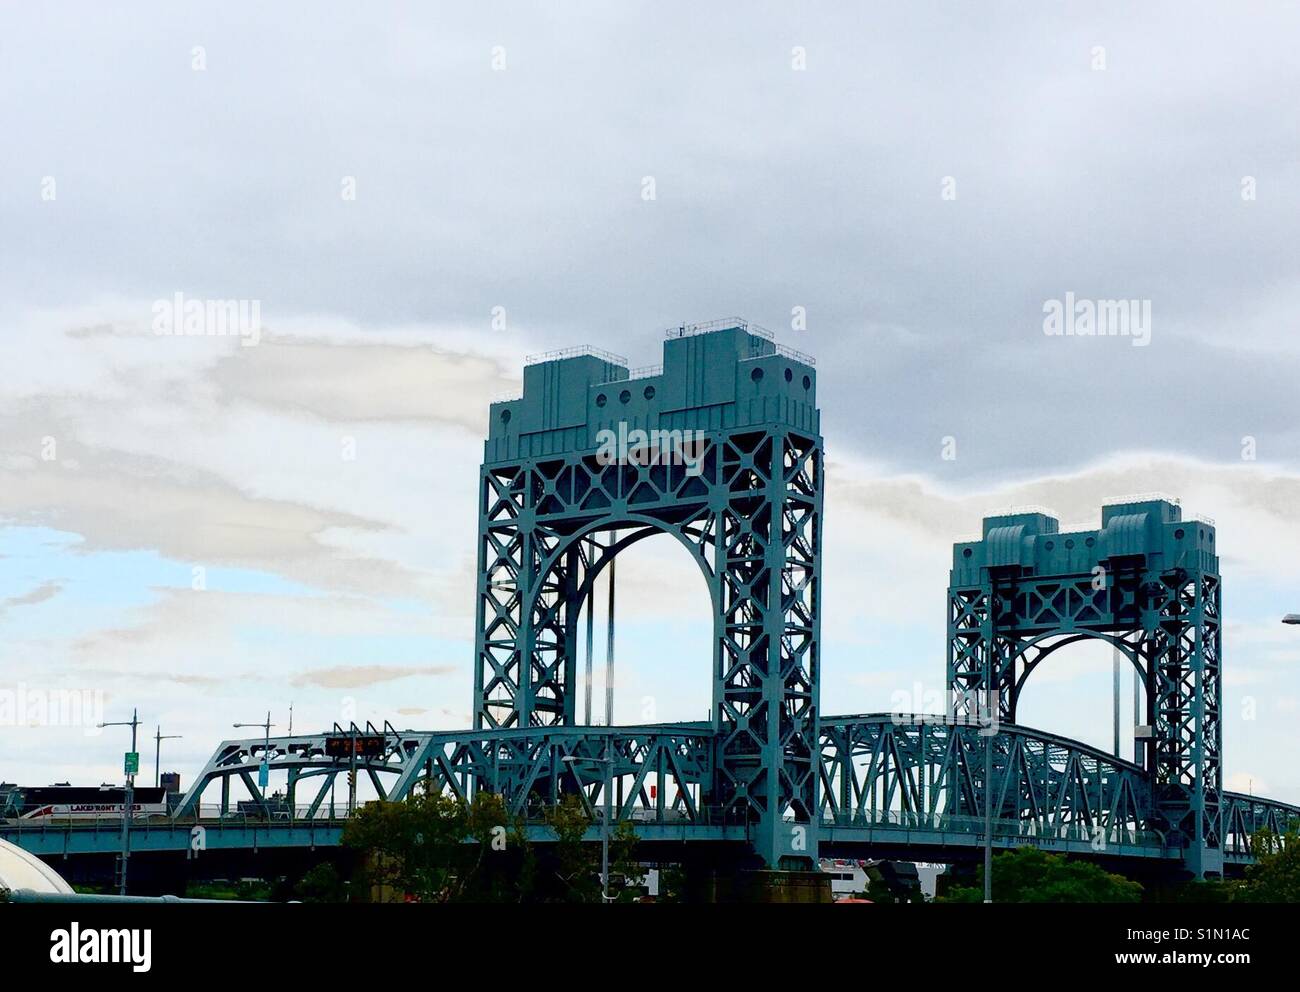 New York Harlem River Pont de levage vertical, 1 des 3 ponts de la Robert F. Kennedy (Triborough Bridge) qui relie 125th St., Harlem River et du FDR. Banque D'Images